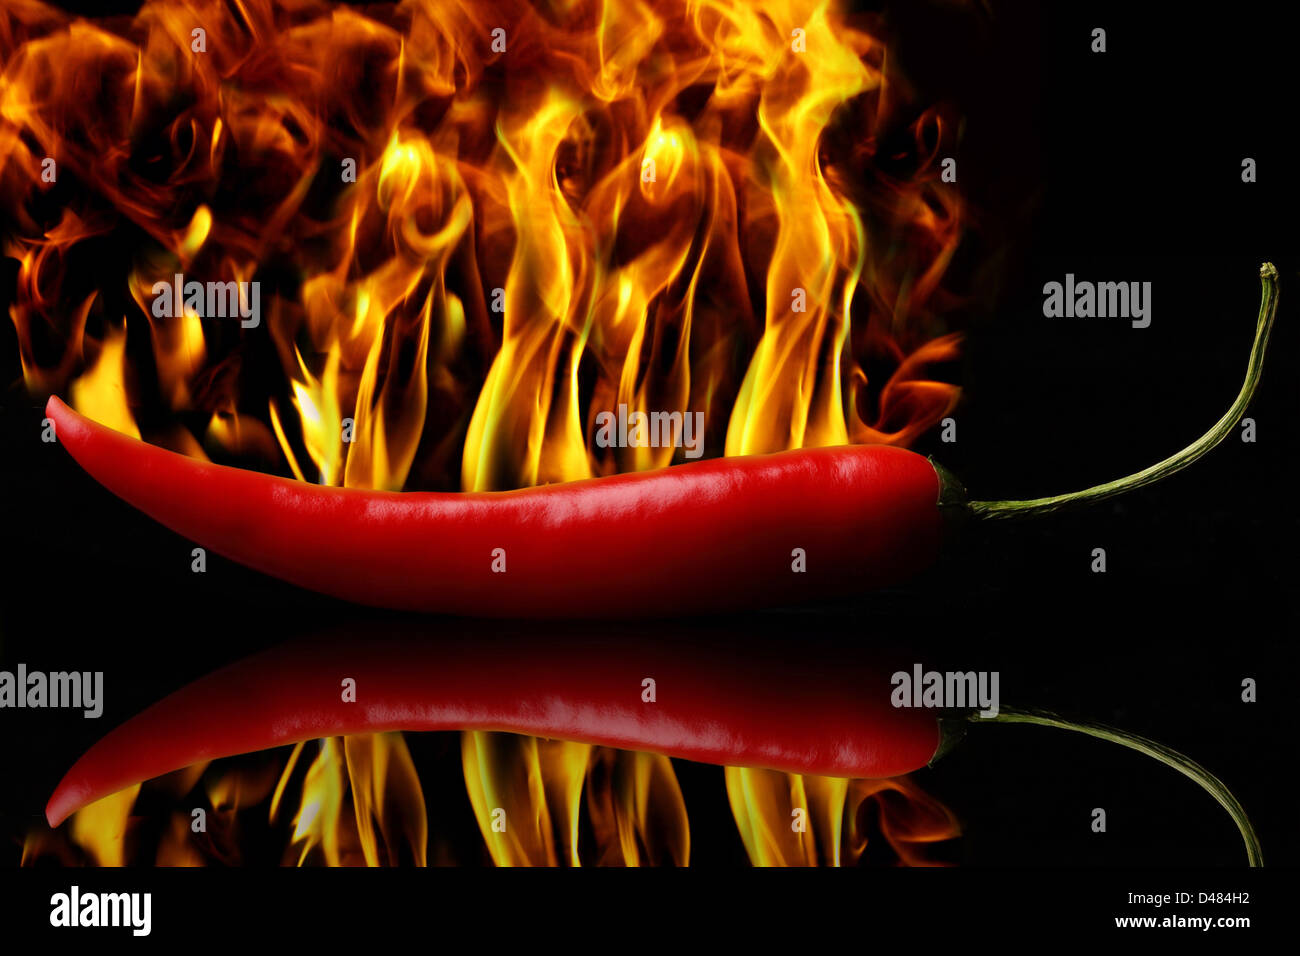 Eine heiße rote Peperoni in Flammen. Stockfoto